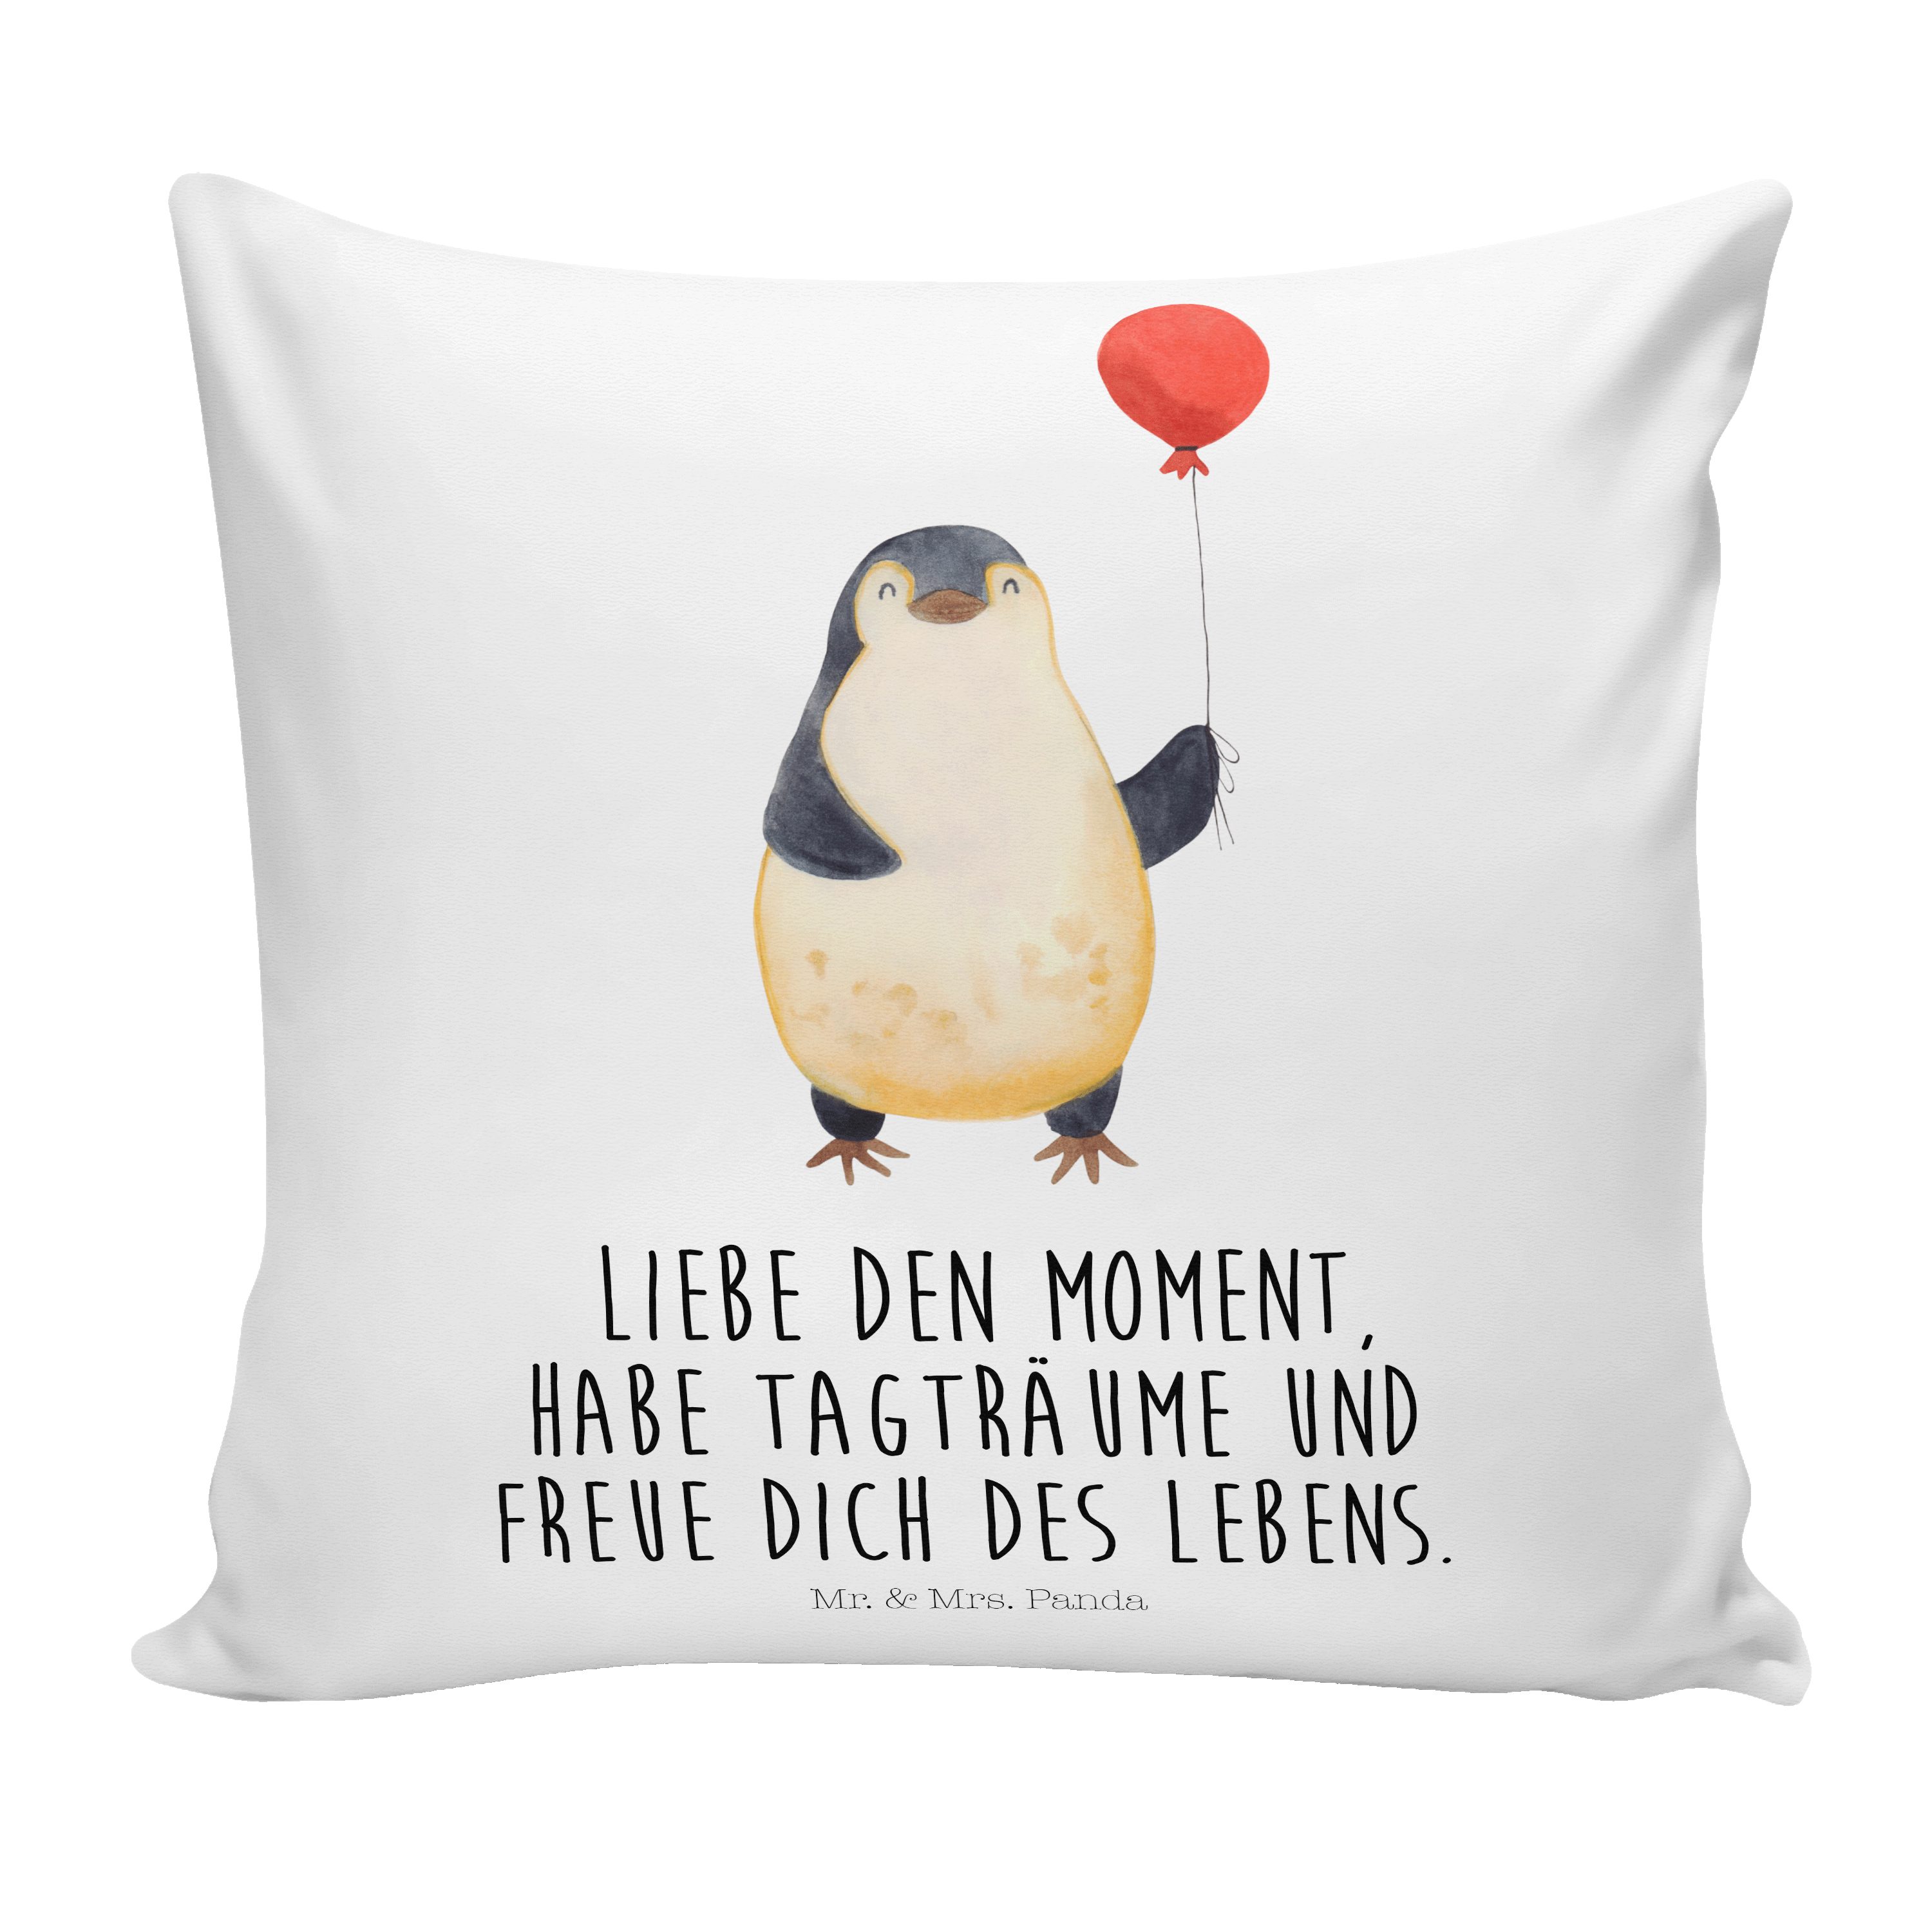 Mr. & Mrs. Panda Dekokissen Pinguin Luftballon - Weiß - Geschenk, Kissenhülle, Dekokissen, Liebe | Dekokissen